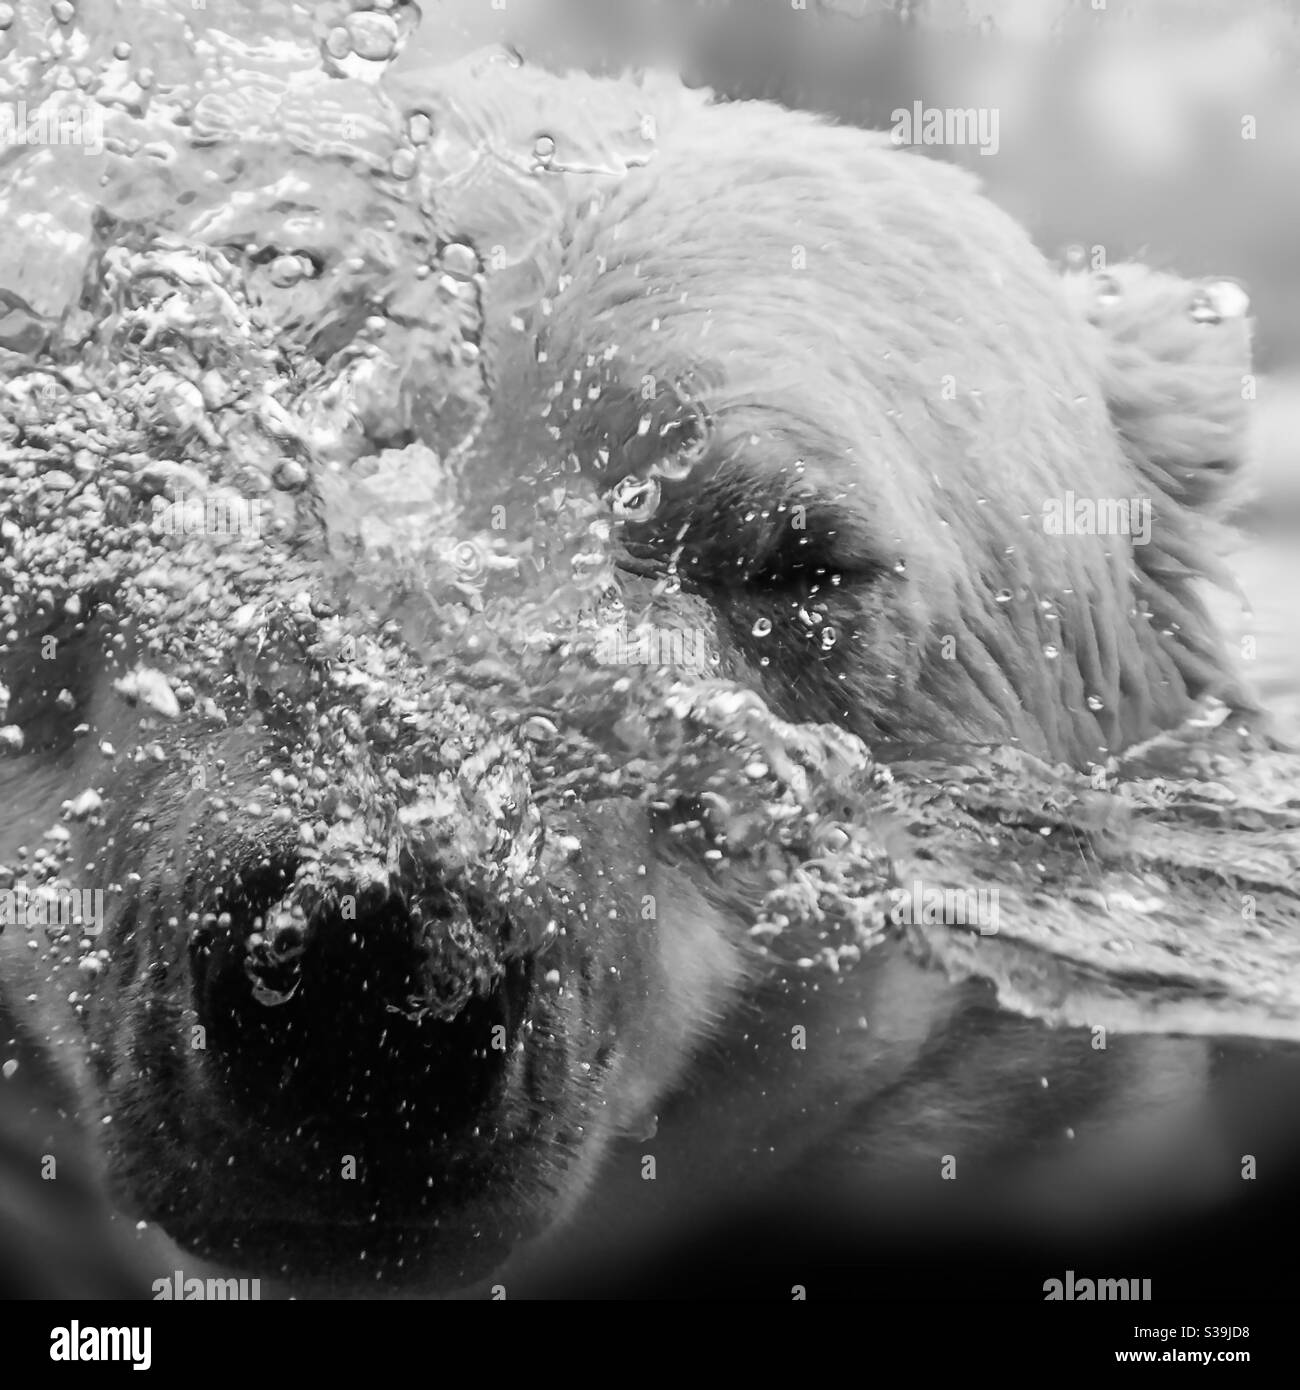 L'orso polare spruzzi, la testa vortica acqua e bolle d'aria, in bianco e nero Foto Stock